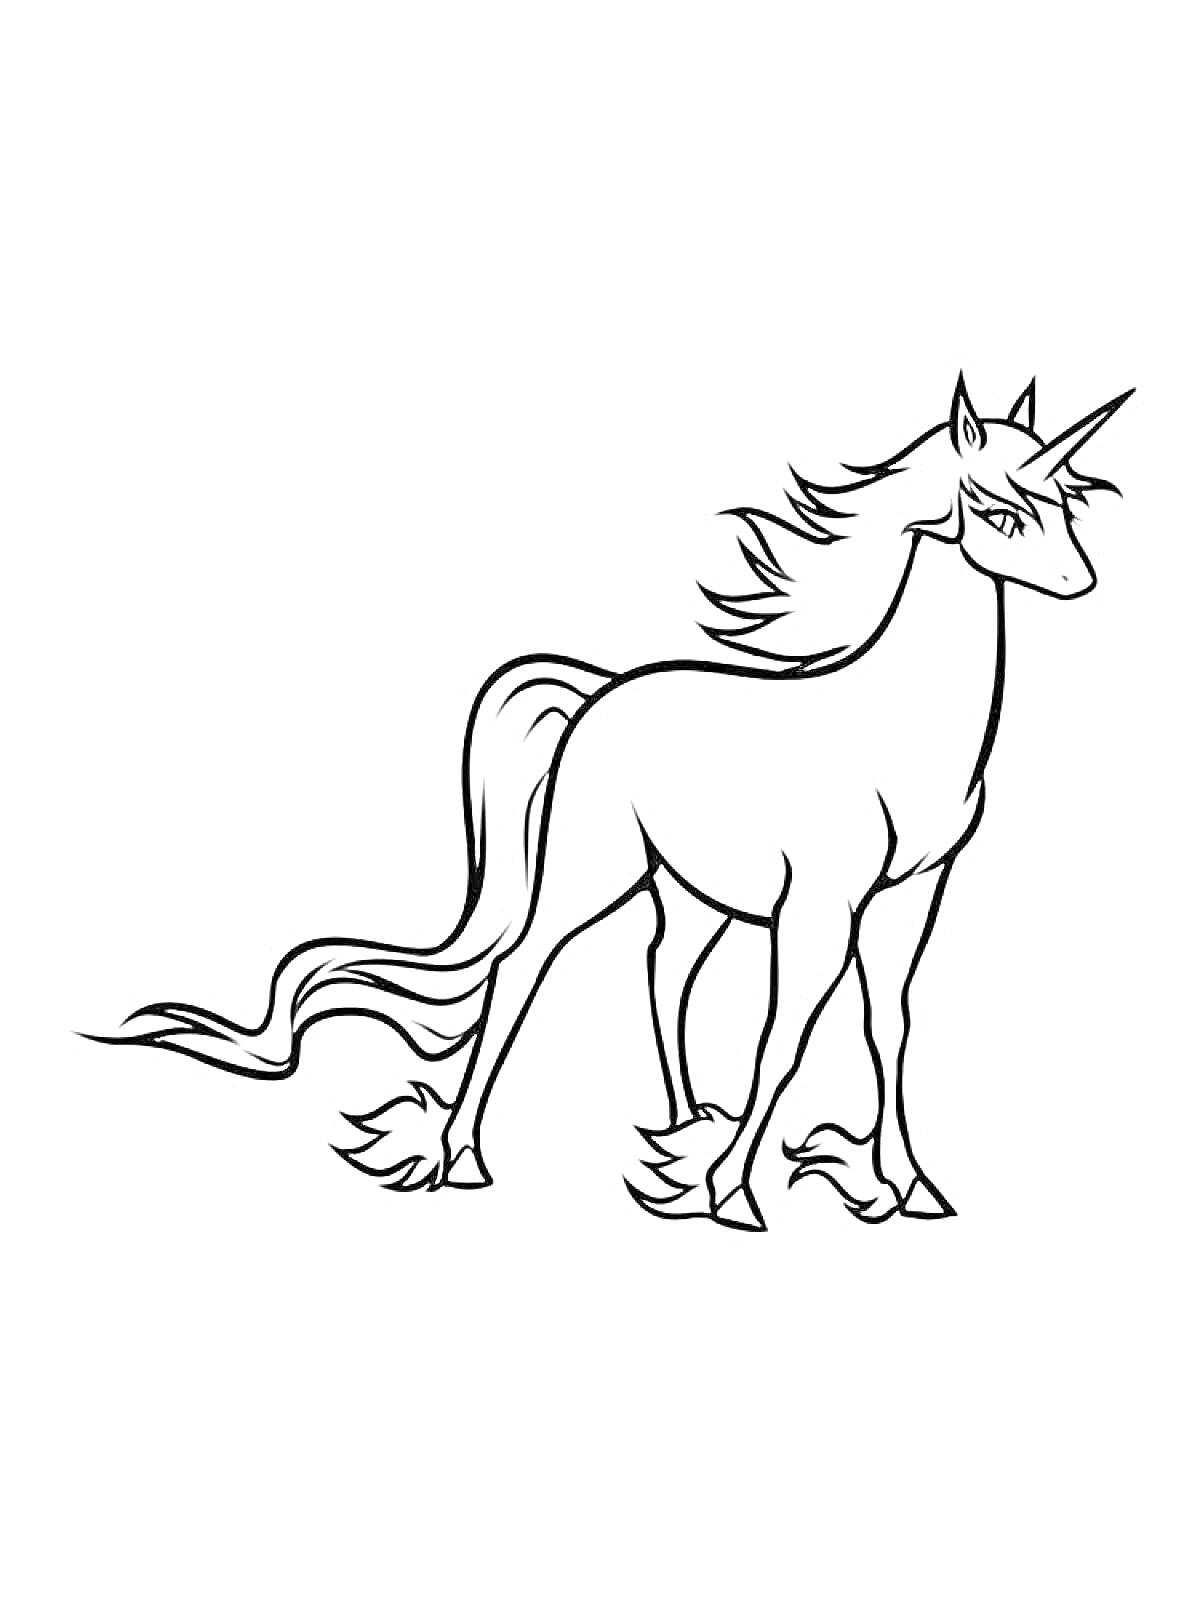 Раскраска Единорог с развевающейся гривой и хвостом